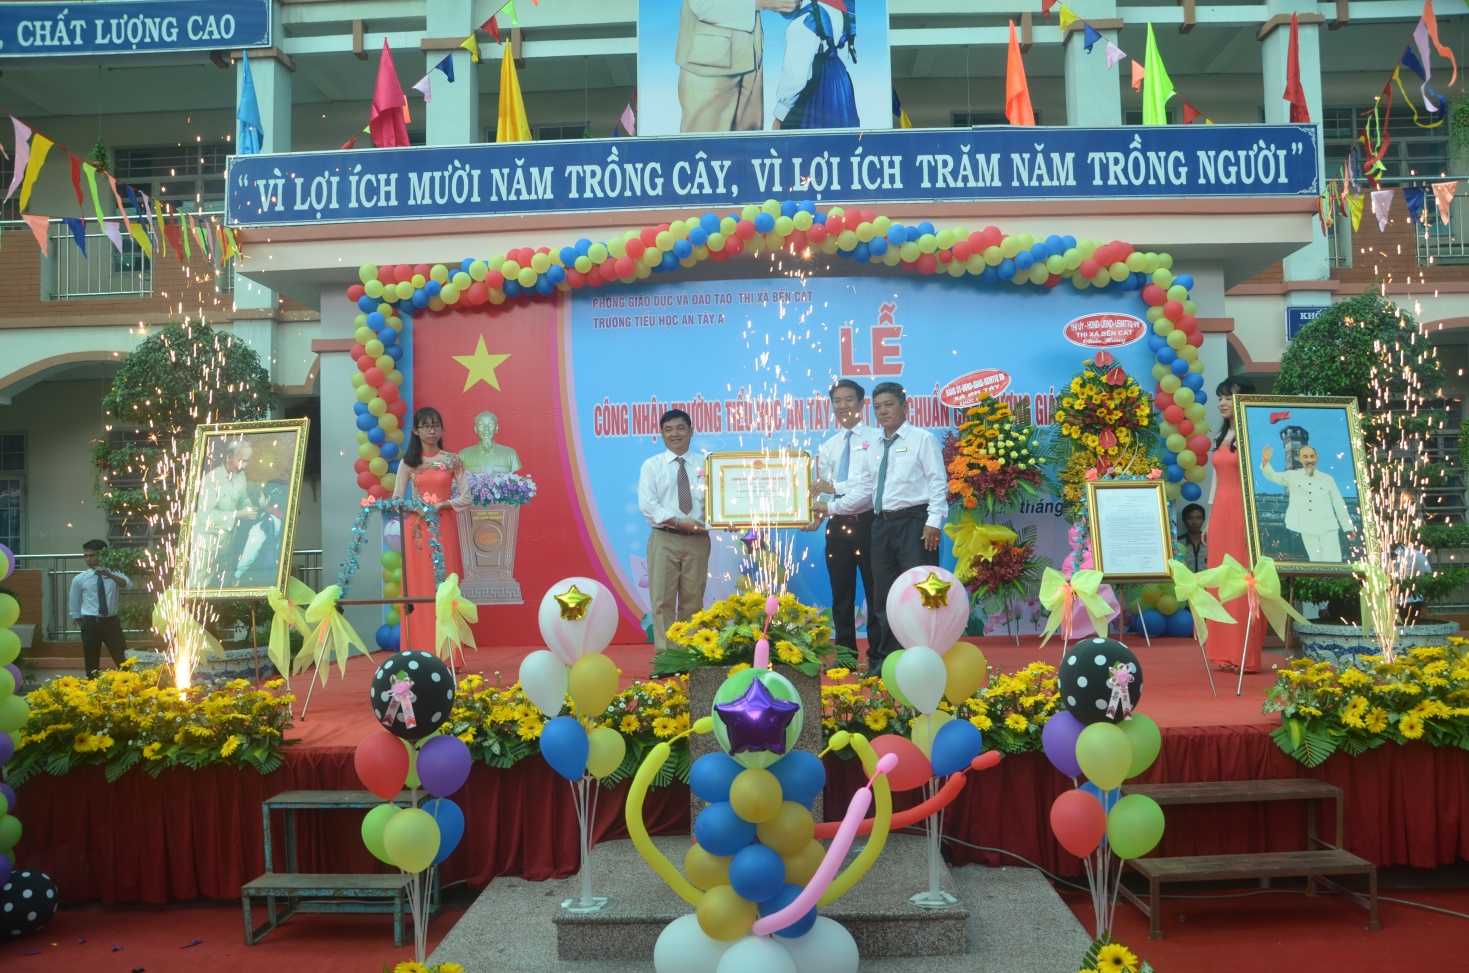 Ông Trần Đình Khương – Phó Trưởng phòng Giáo dục Tiểu học – Sở Giáo dục và Đào tạo tỉnh Bình Dương trao Chứng nhận chất lượng Giáo dục cho Ban giám hiệu nhà trường